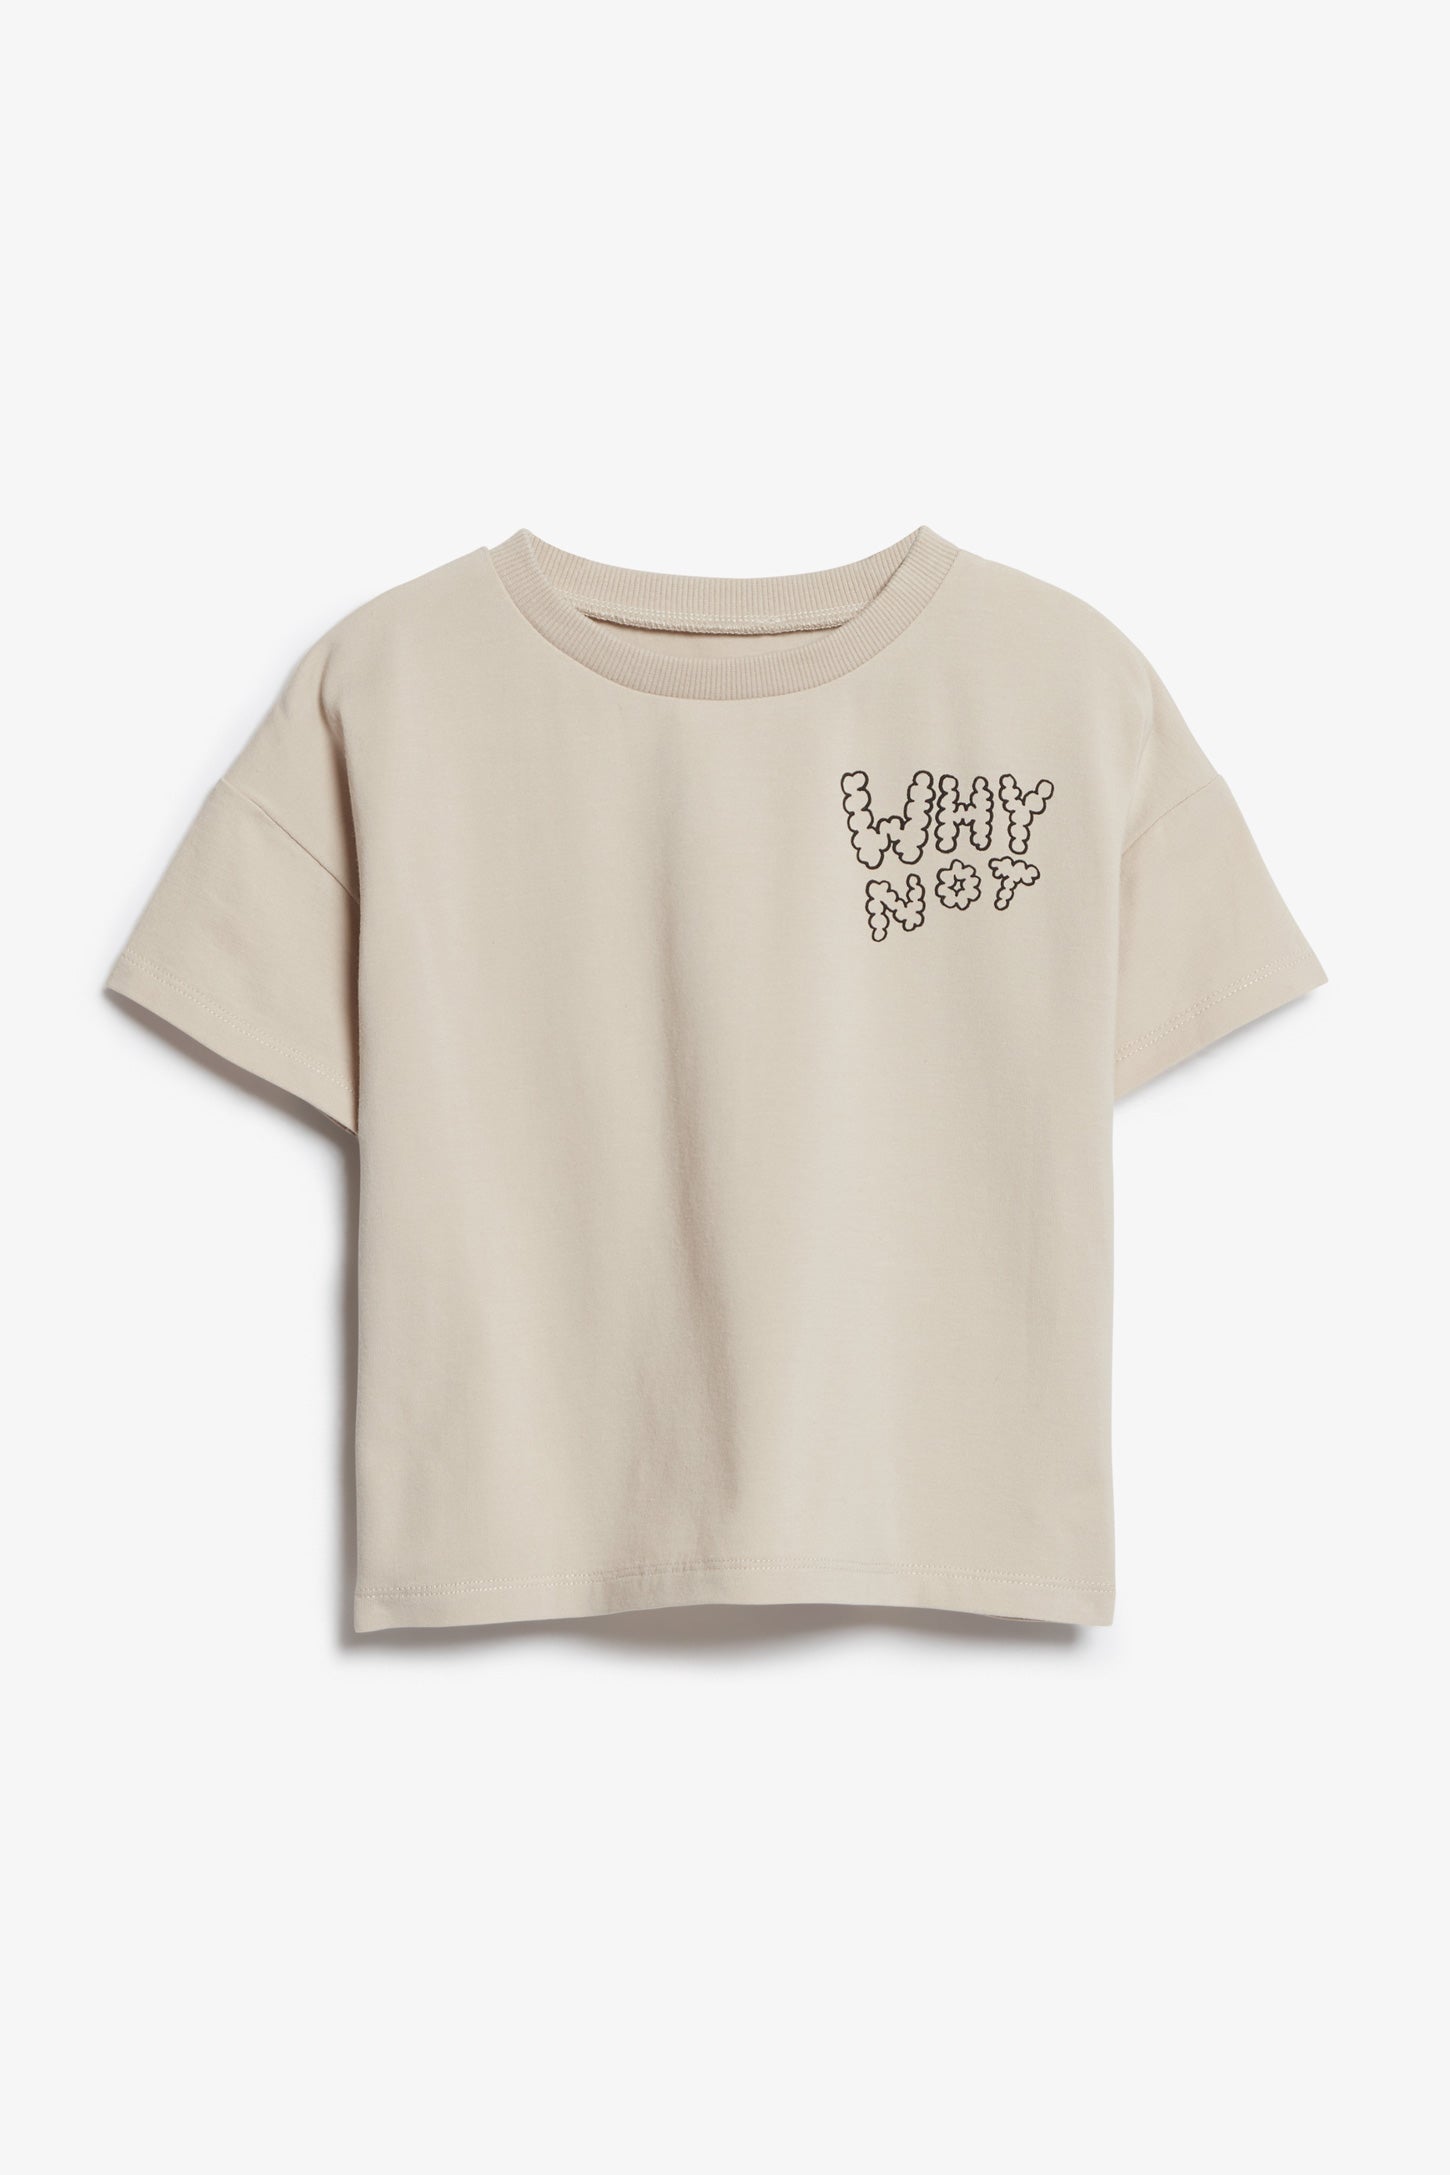 T-shirt ample en coton bio, 2T-3T - Bébé garçon && BEIGE